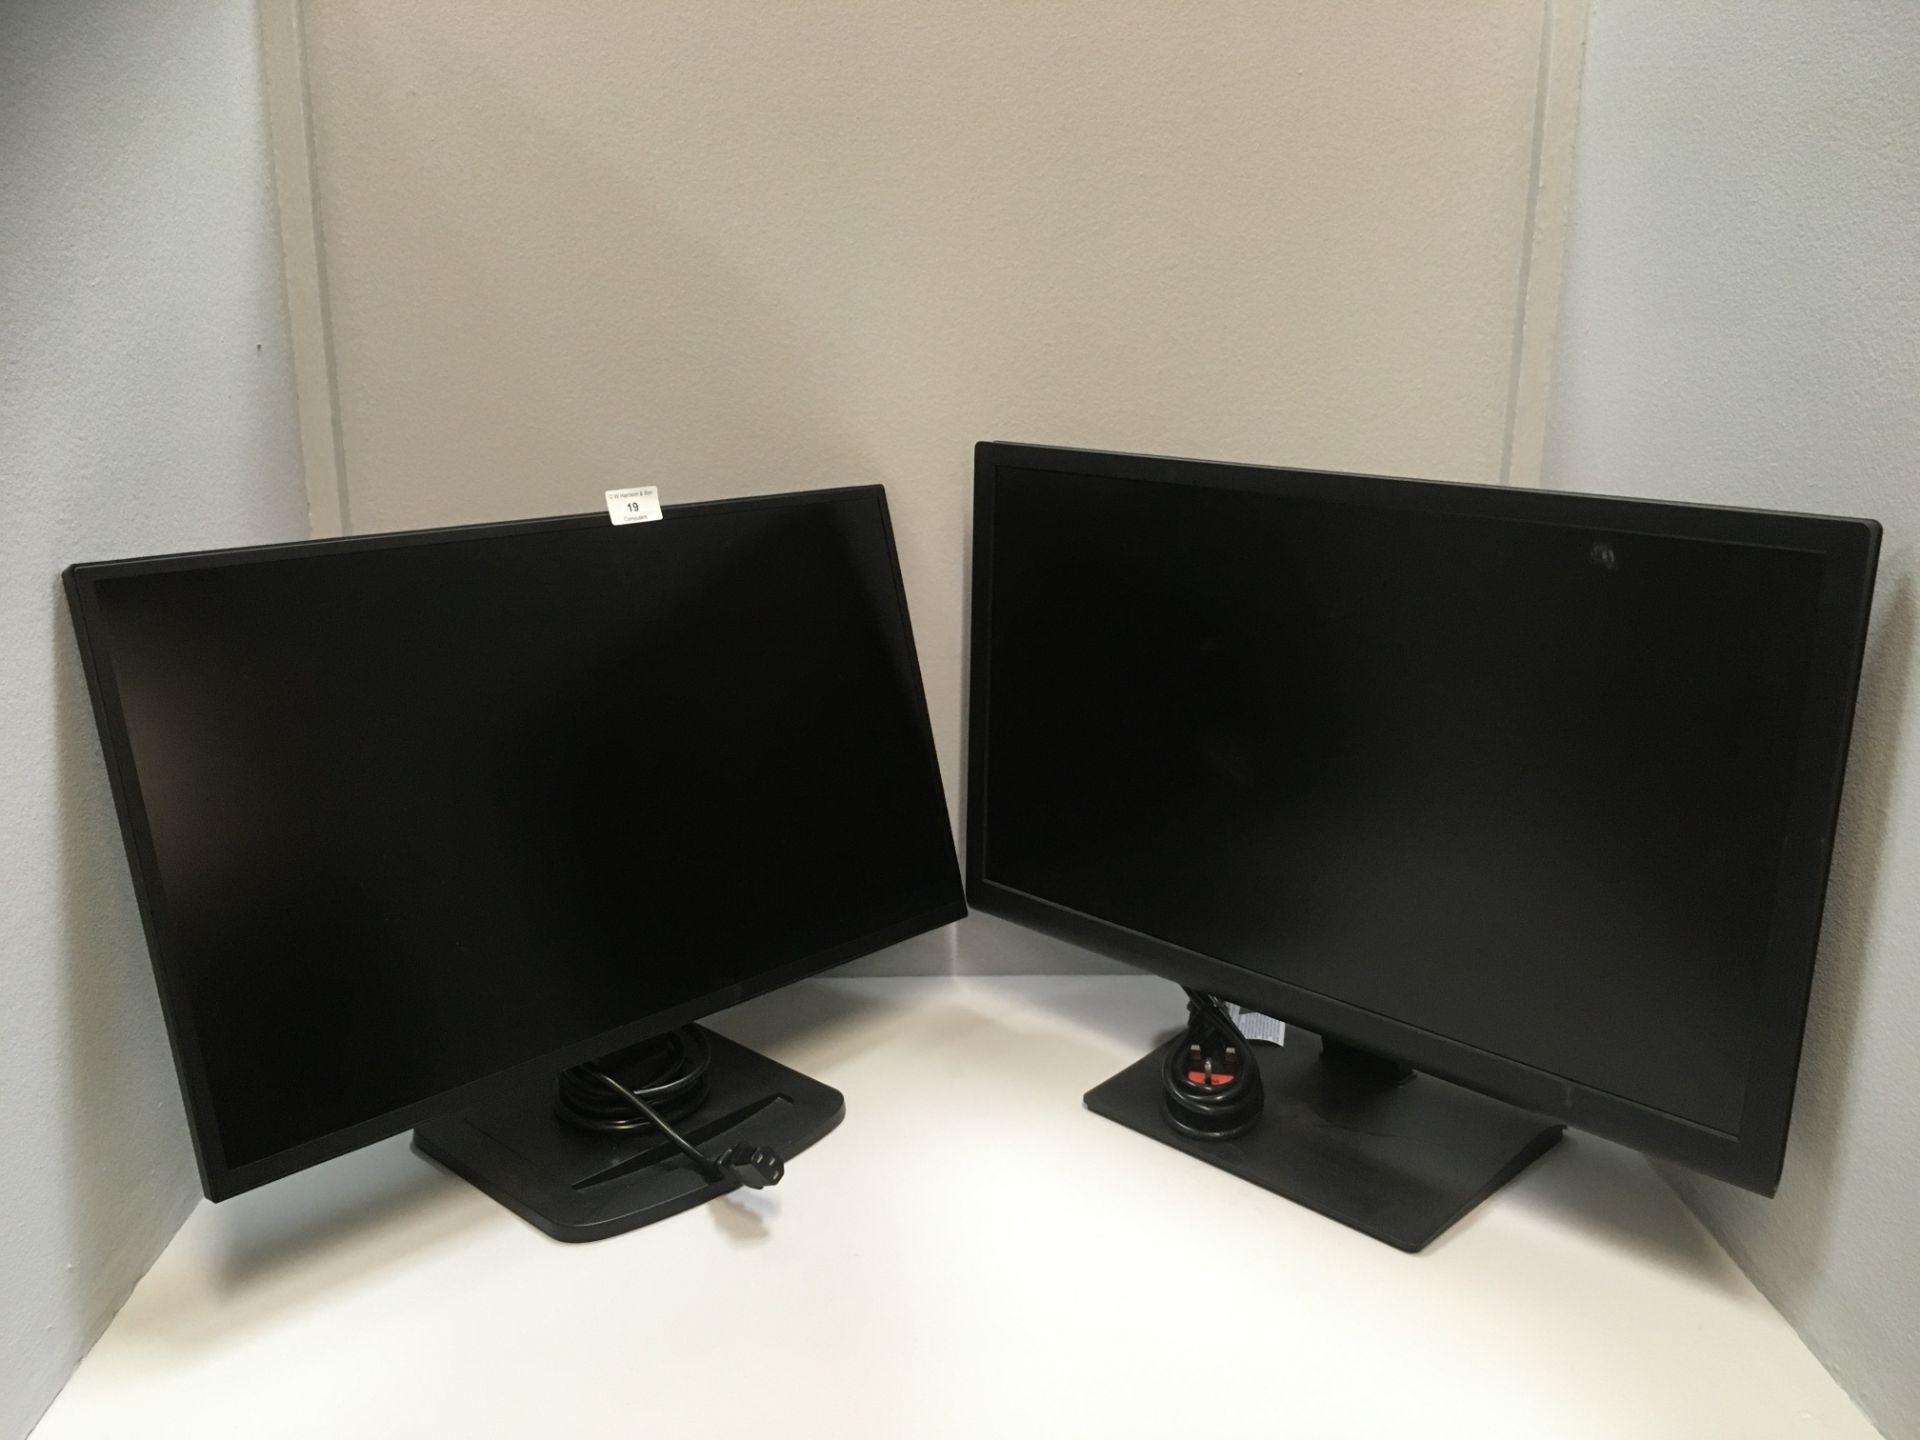 2 x items - Iiyama ProLite X2481HS 24" monitor and a EB2476Y 24" monitor